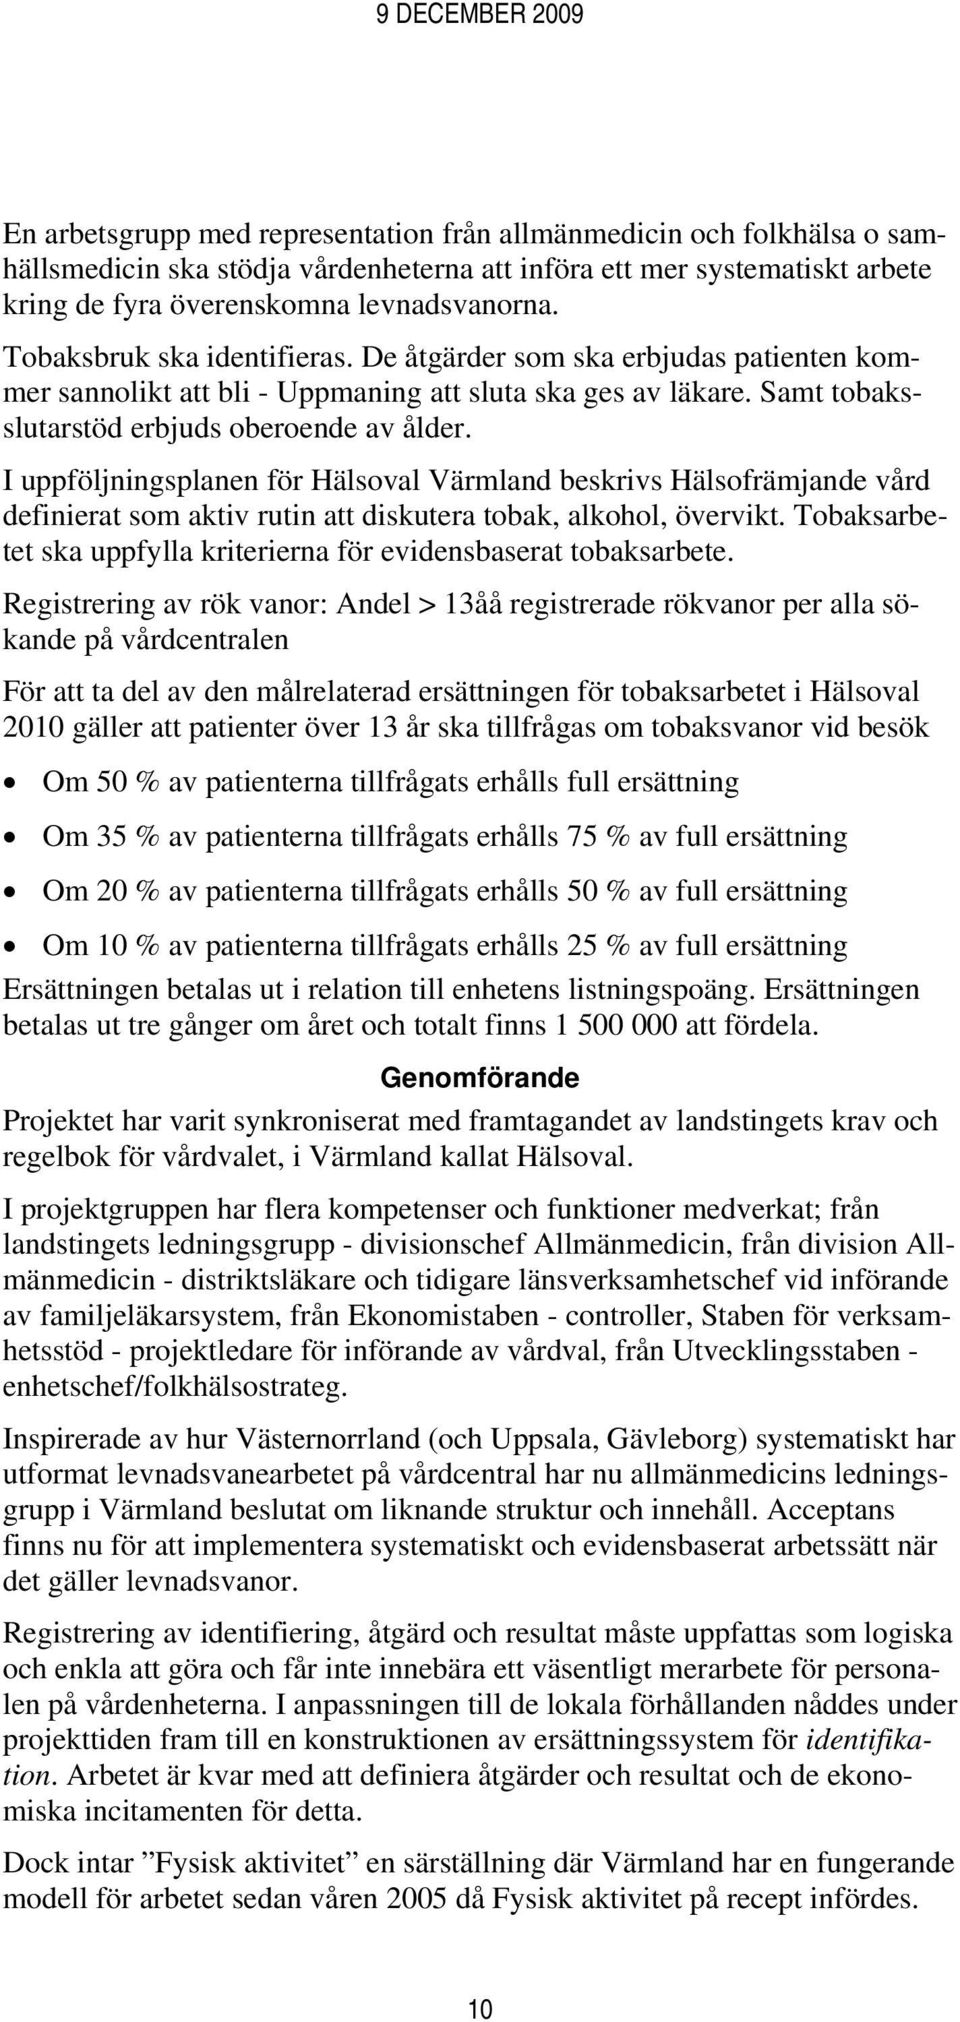 I uppföljningsplanen för Hälsoval Värmland beskrivs Hälsofrämjande vård definierat som aktiv rutin att diskutera tobak, alkohol, övervikt.